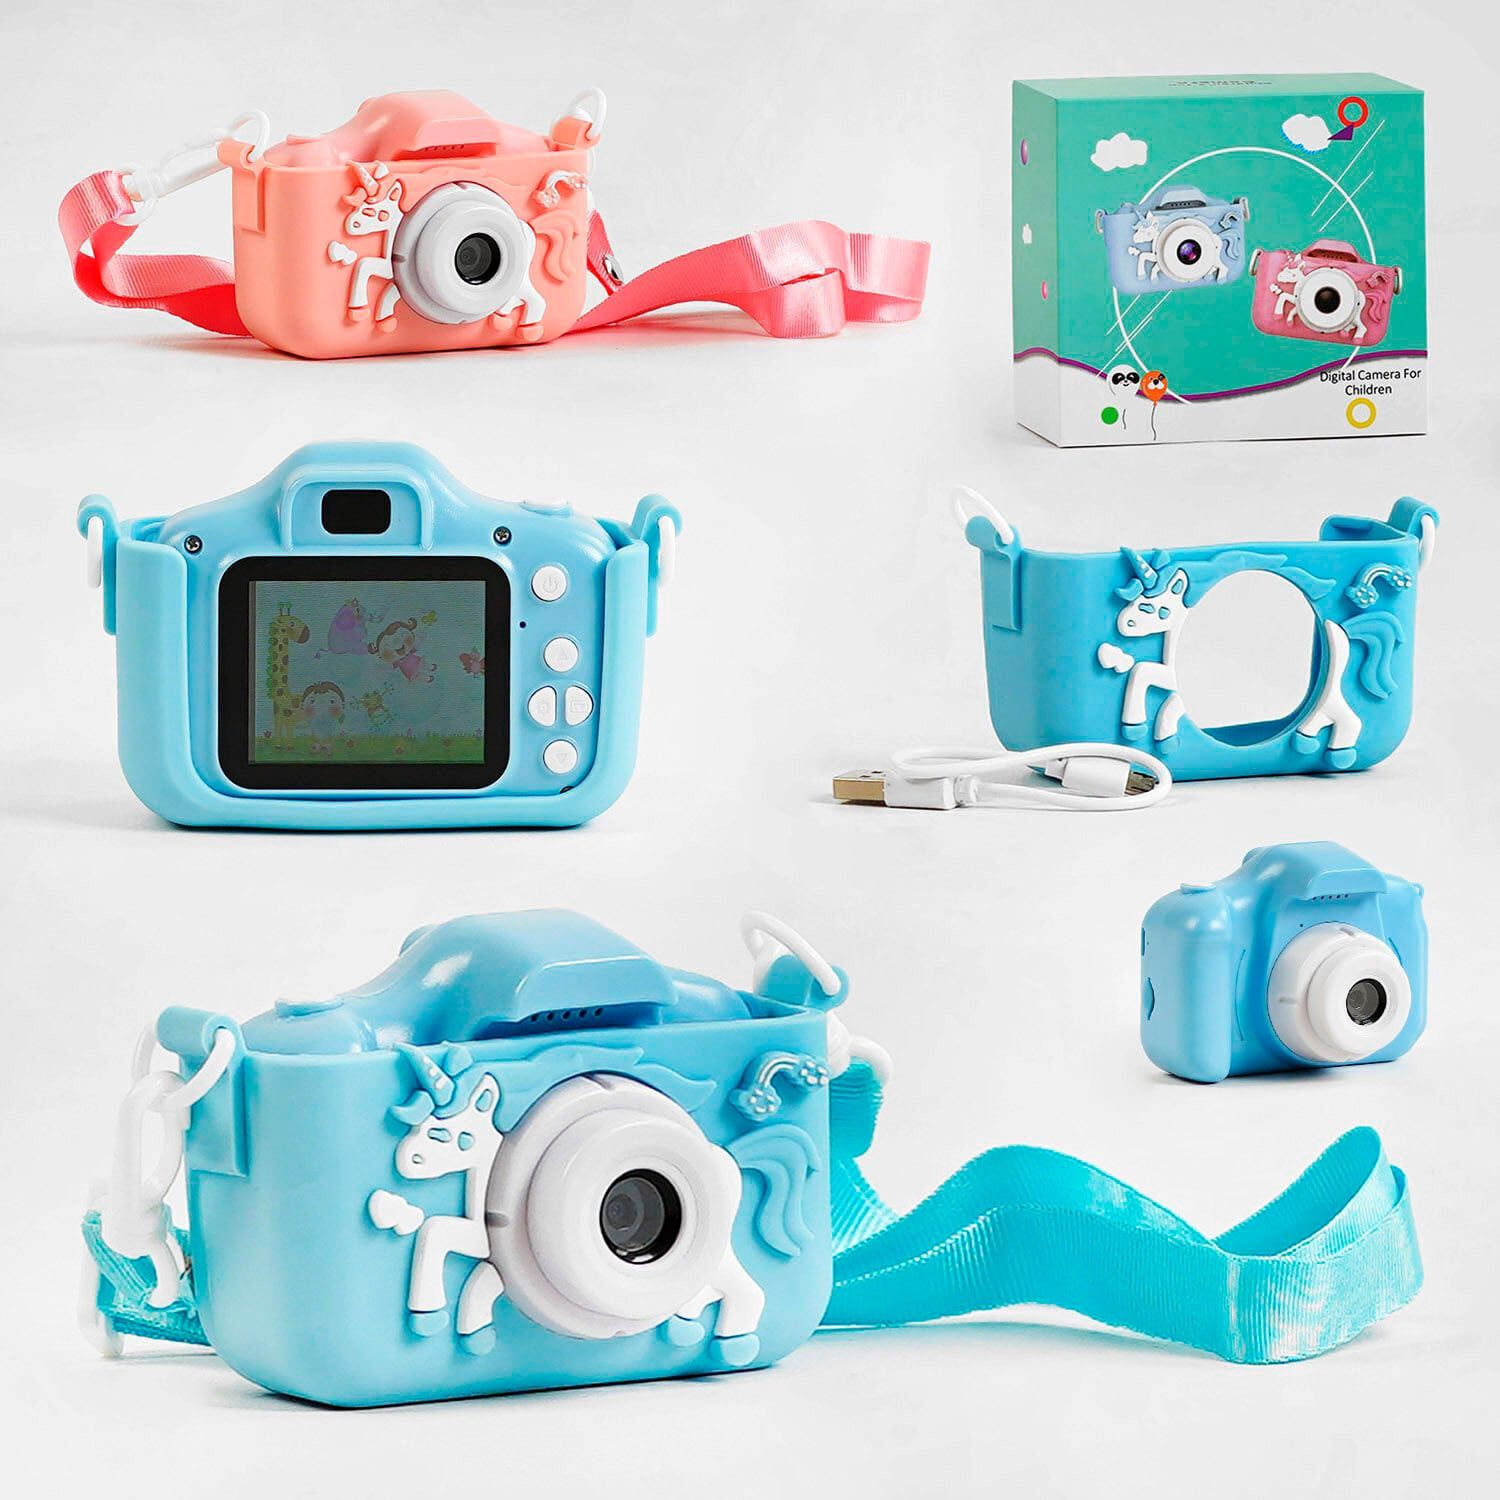 Фотоапарат дитячий (C 58326 / 56662) 2 кольори, відео, фото, ігри, прослуховування музыки, підтримує microSD, у коробці